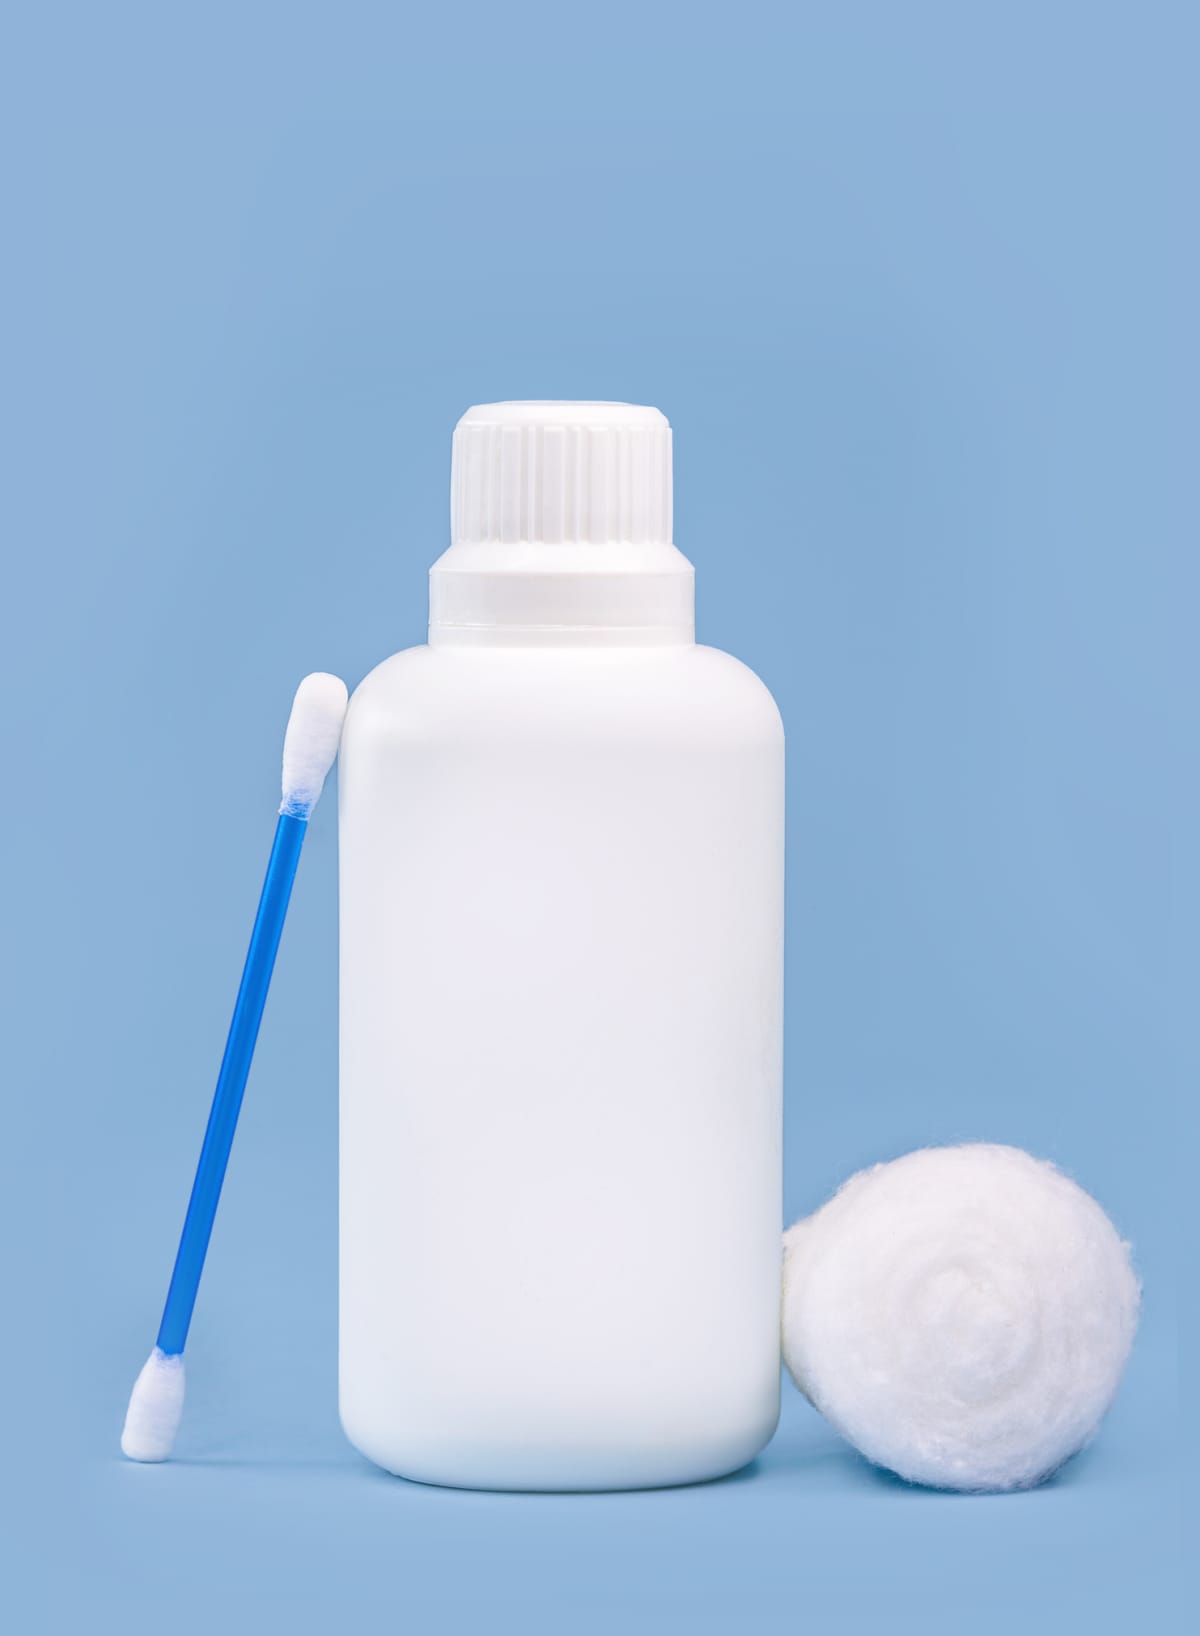 Hydrogen peroxide in a white plastic bottle